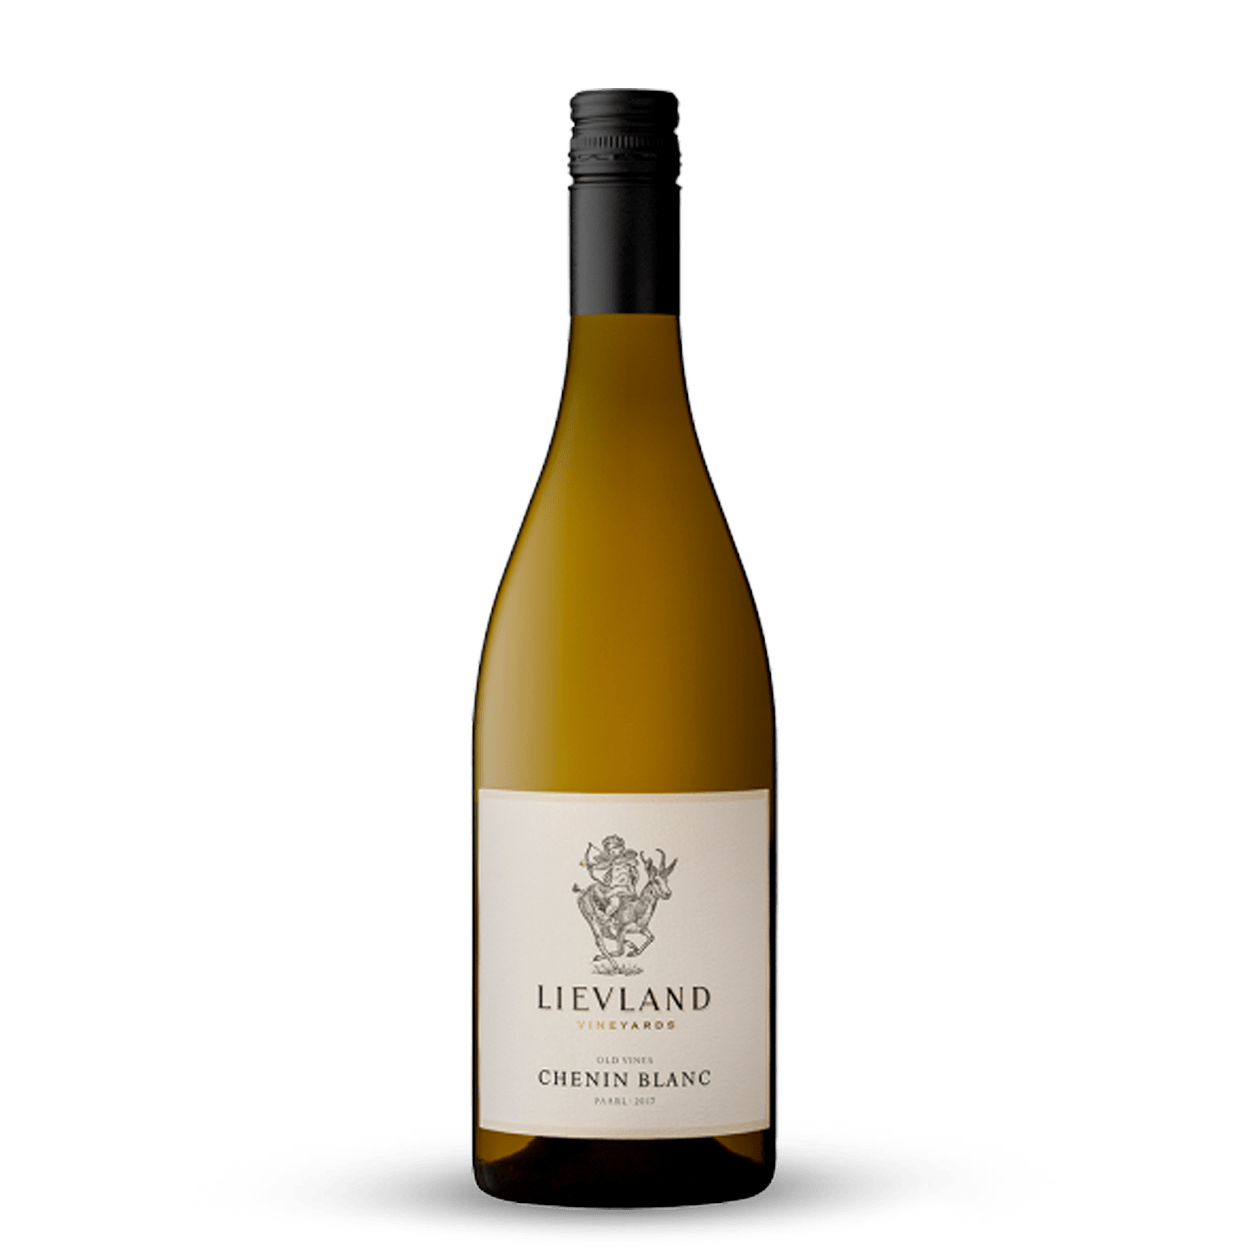 Lievland Chenin Blanc Old Vines